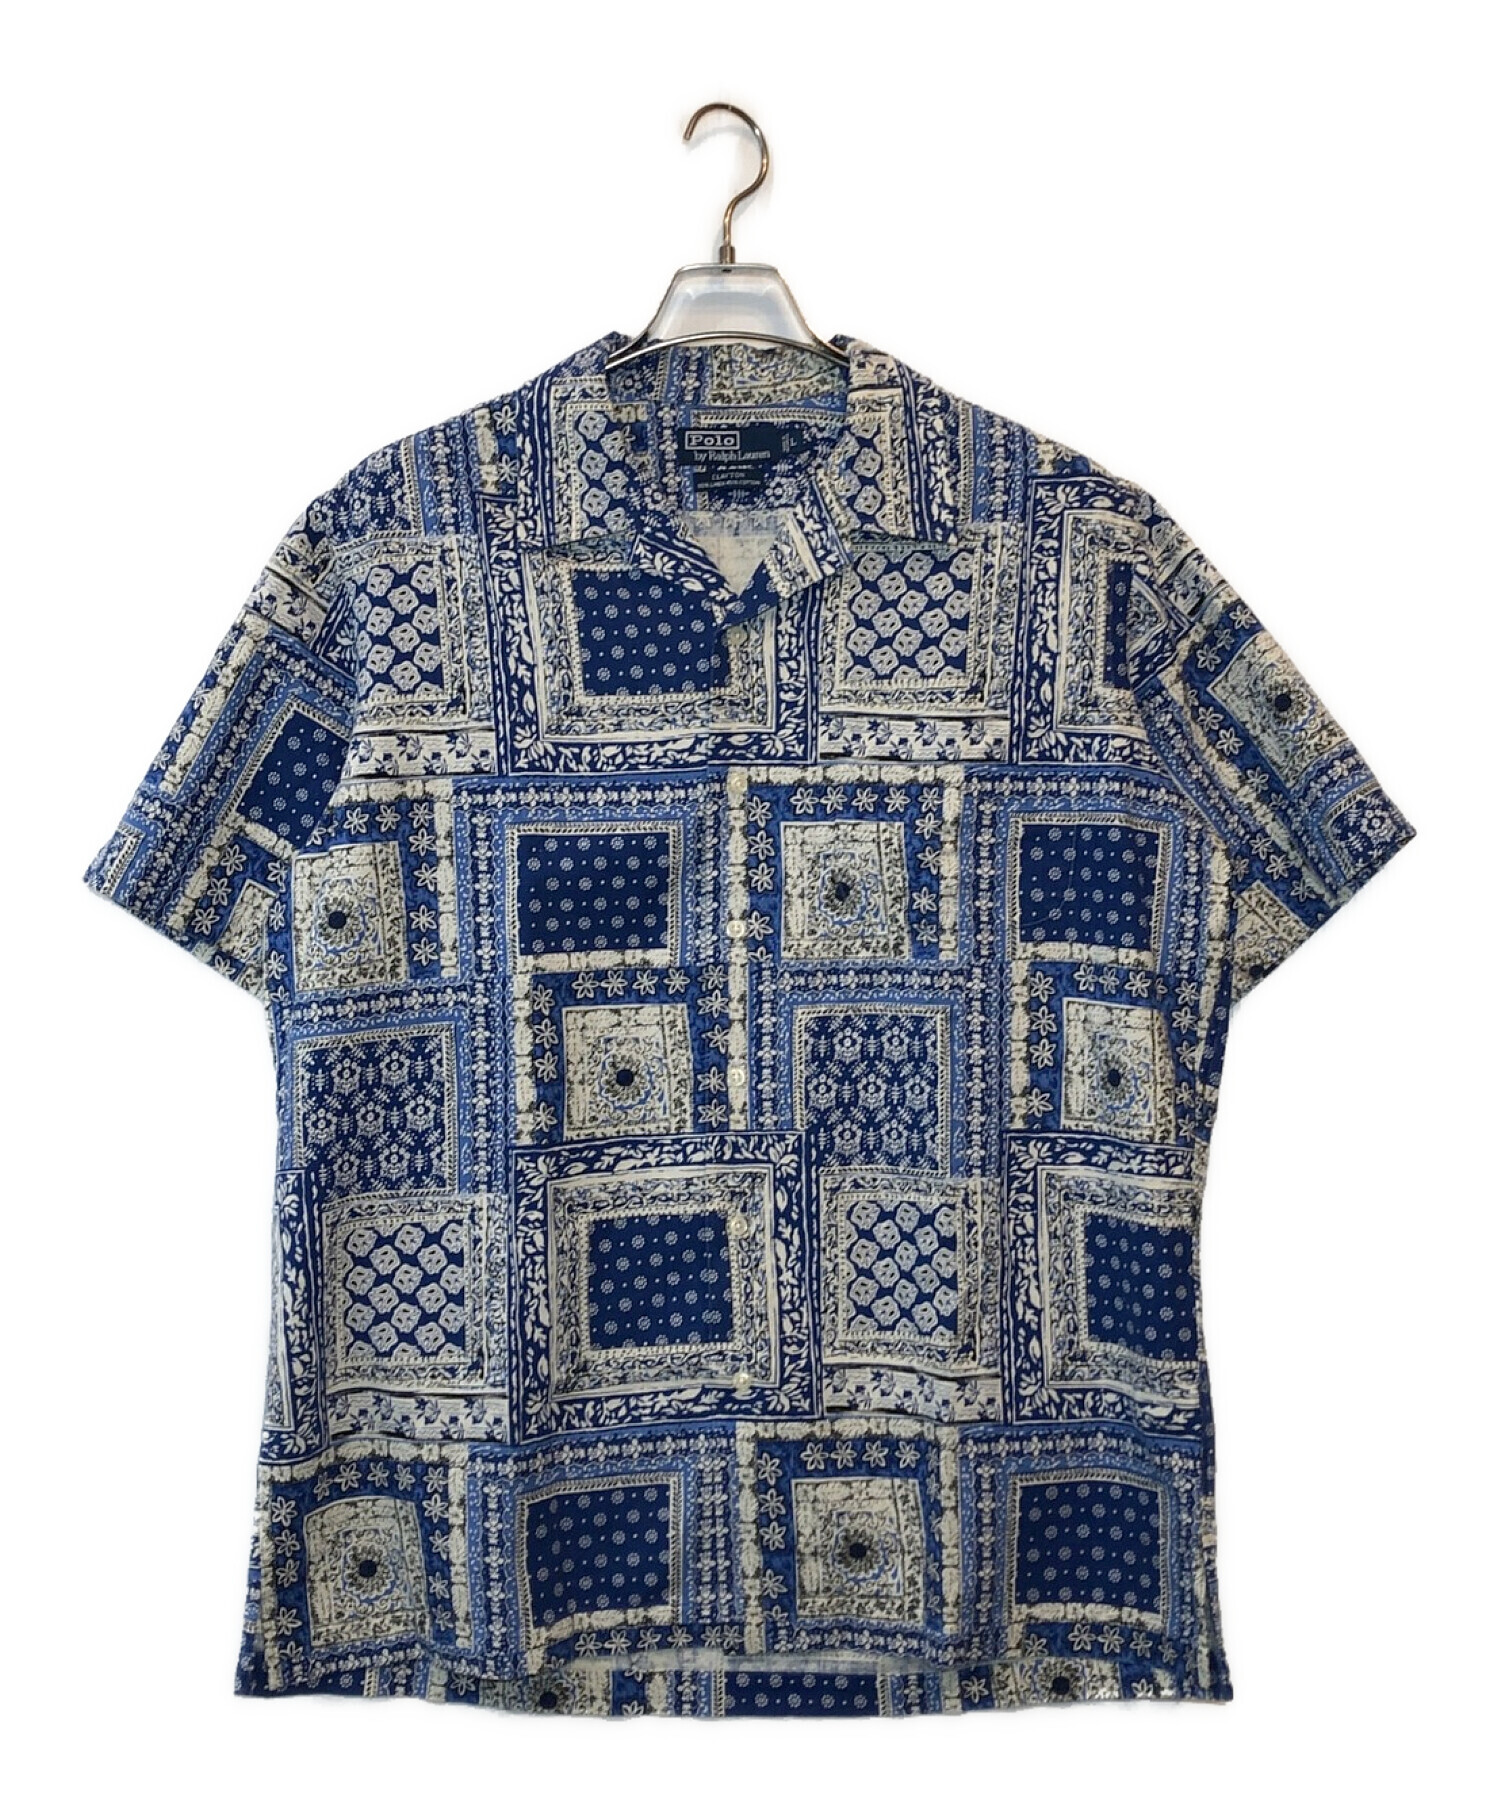 POLO RALPH LAUREN (ポロ・ラルフローレン) 総柄オープンカラーシャツ ブルー サイズ:L